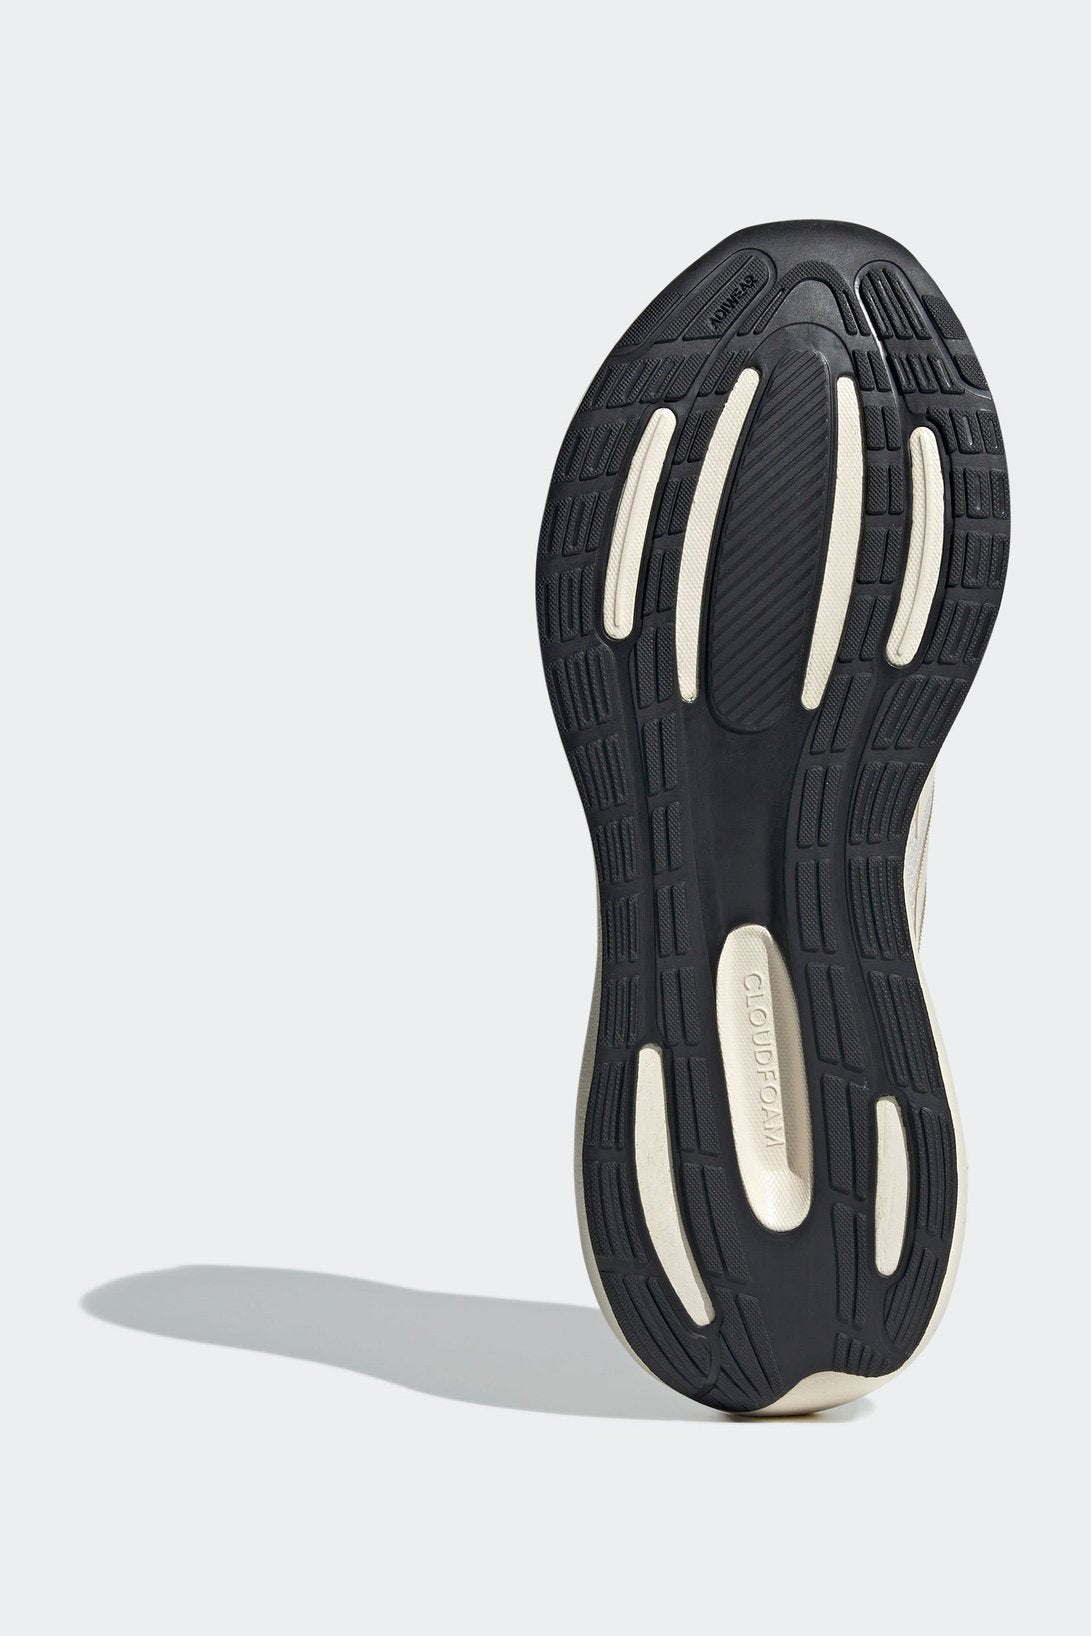 נעלי ספורט לגברים RUNFALCON 3.0 בצבע לבן אפור ושחור